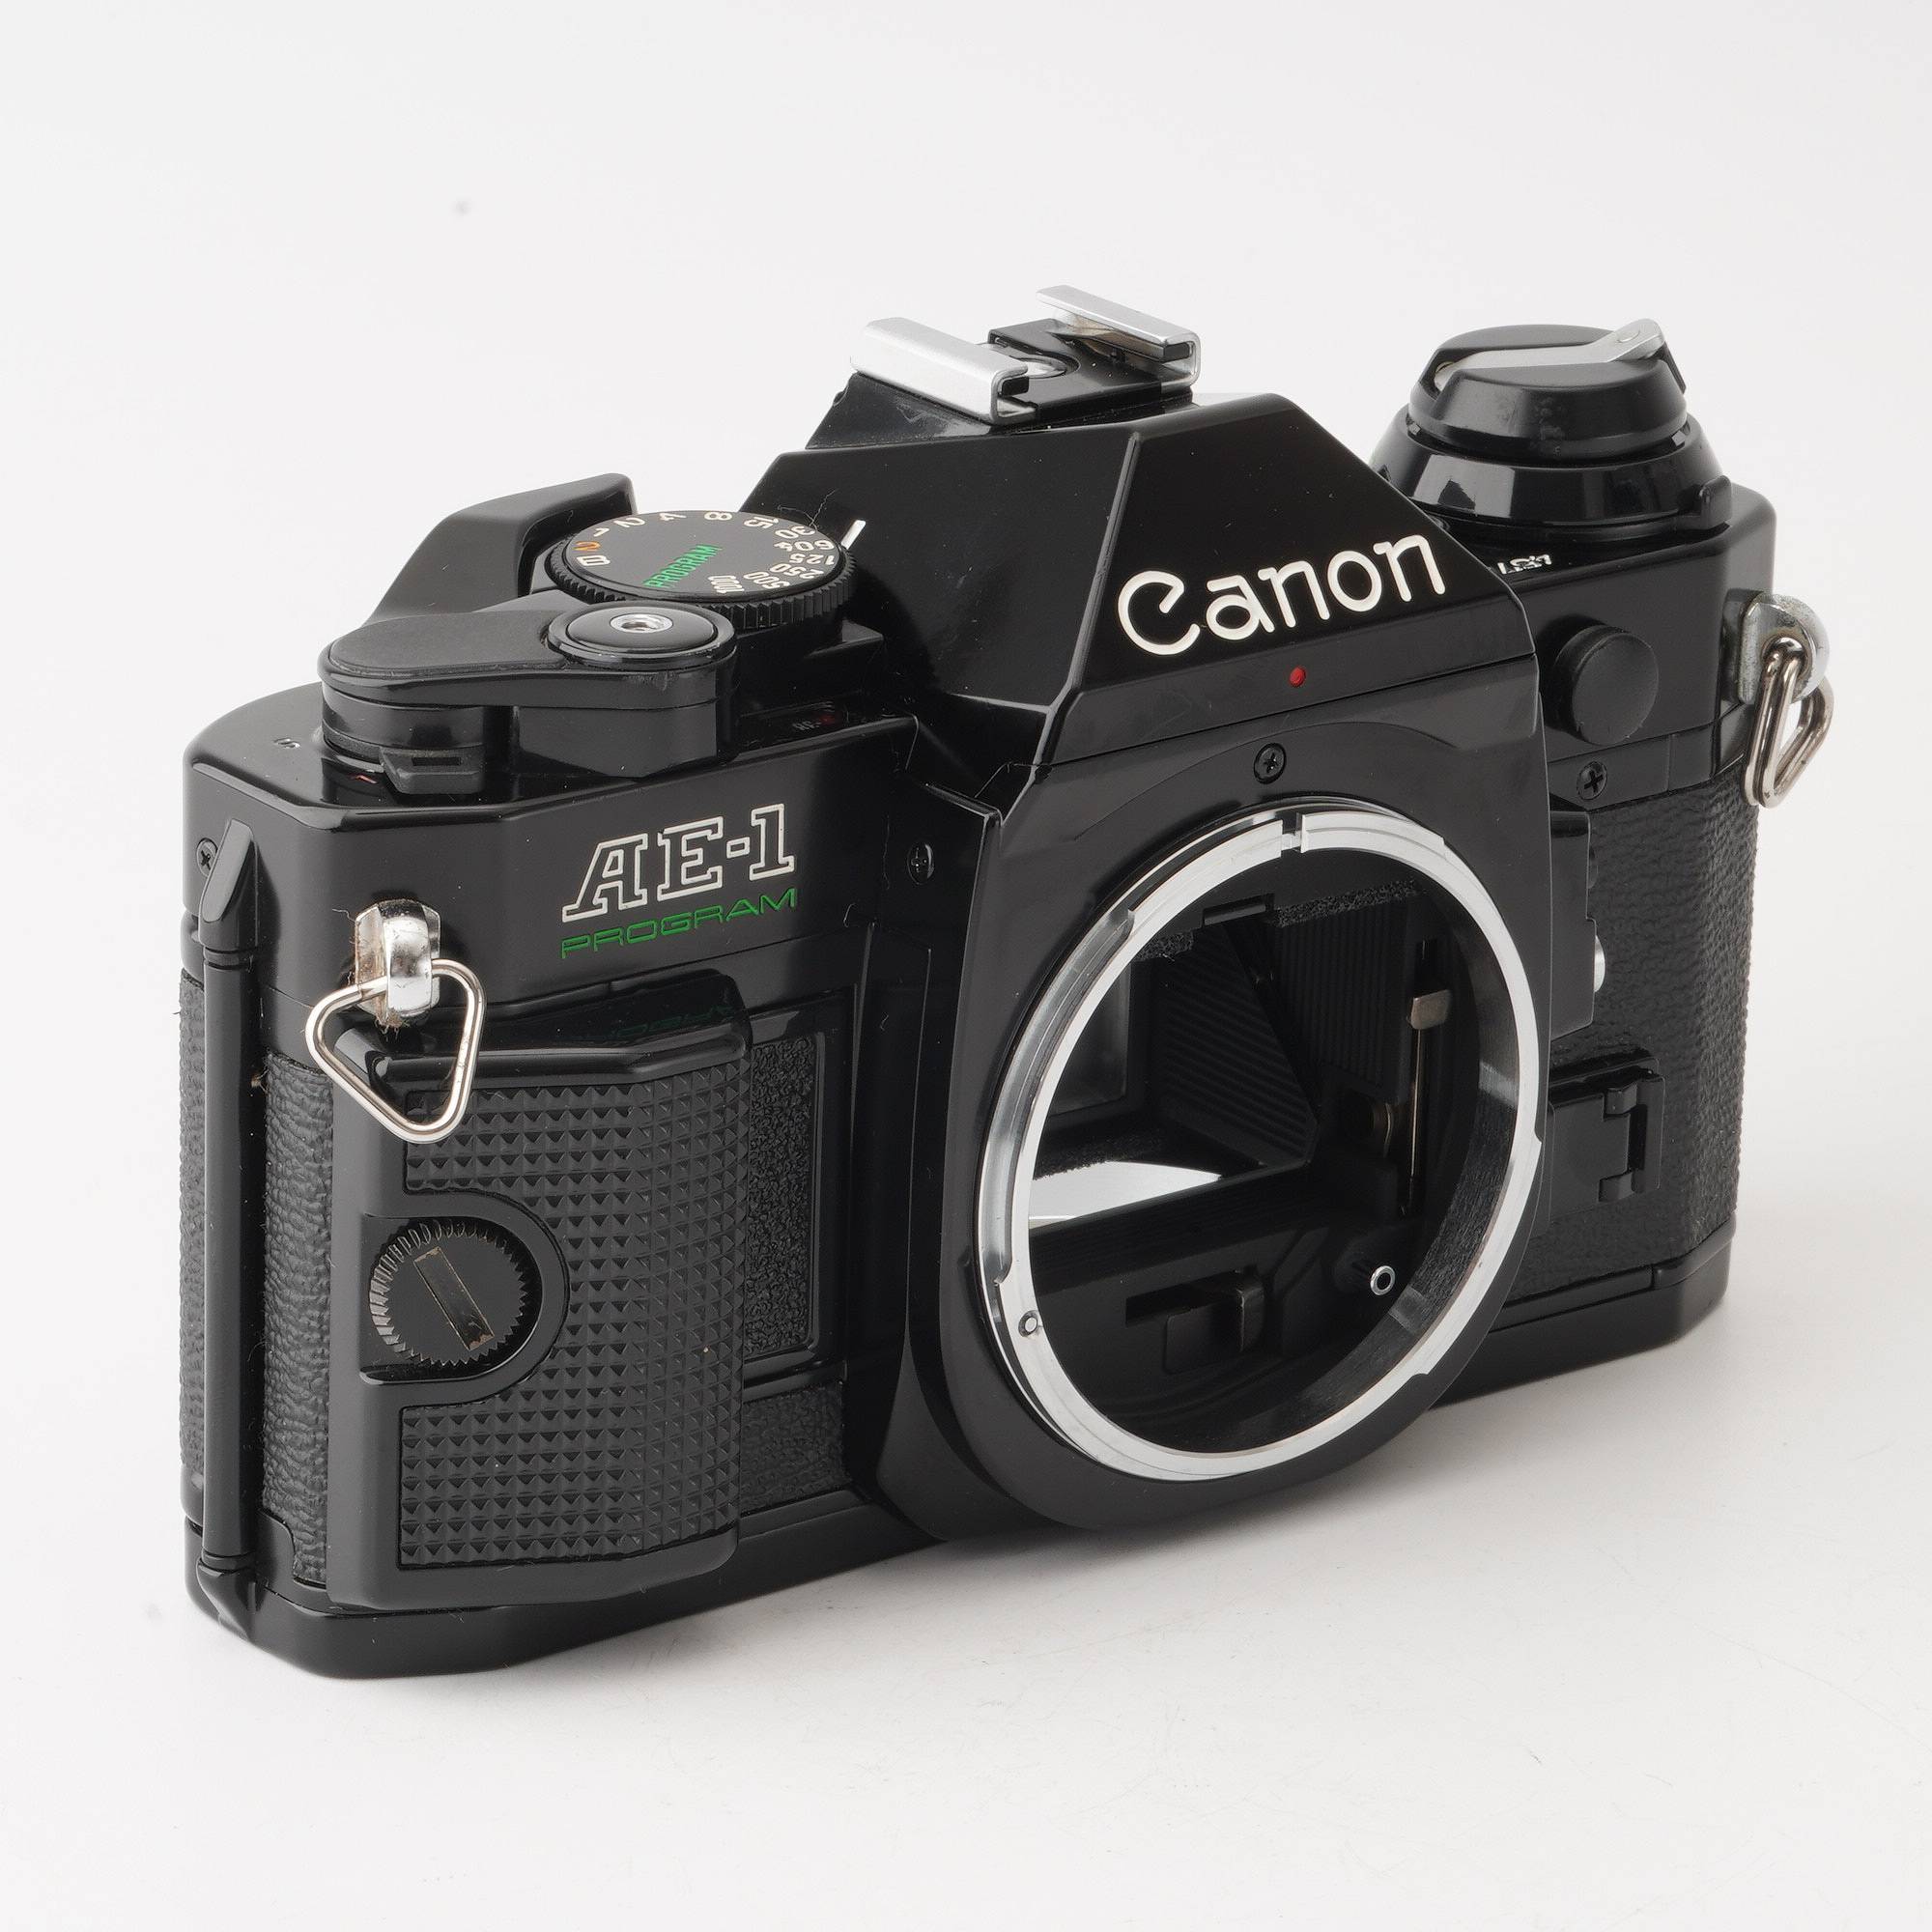 7,560円Canon AE-1  Program + NEW FD50mmf1.4